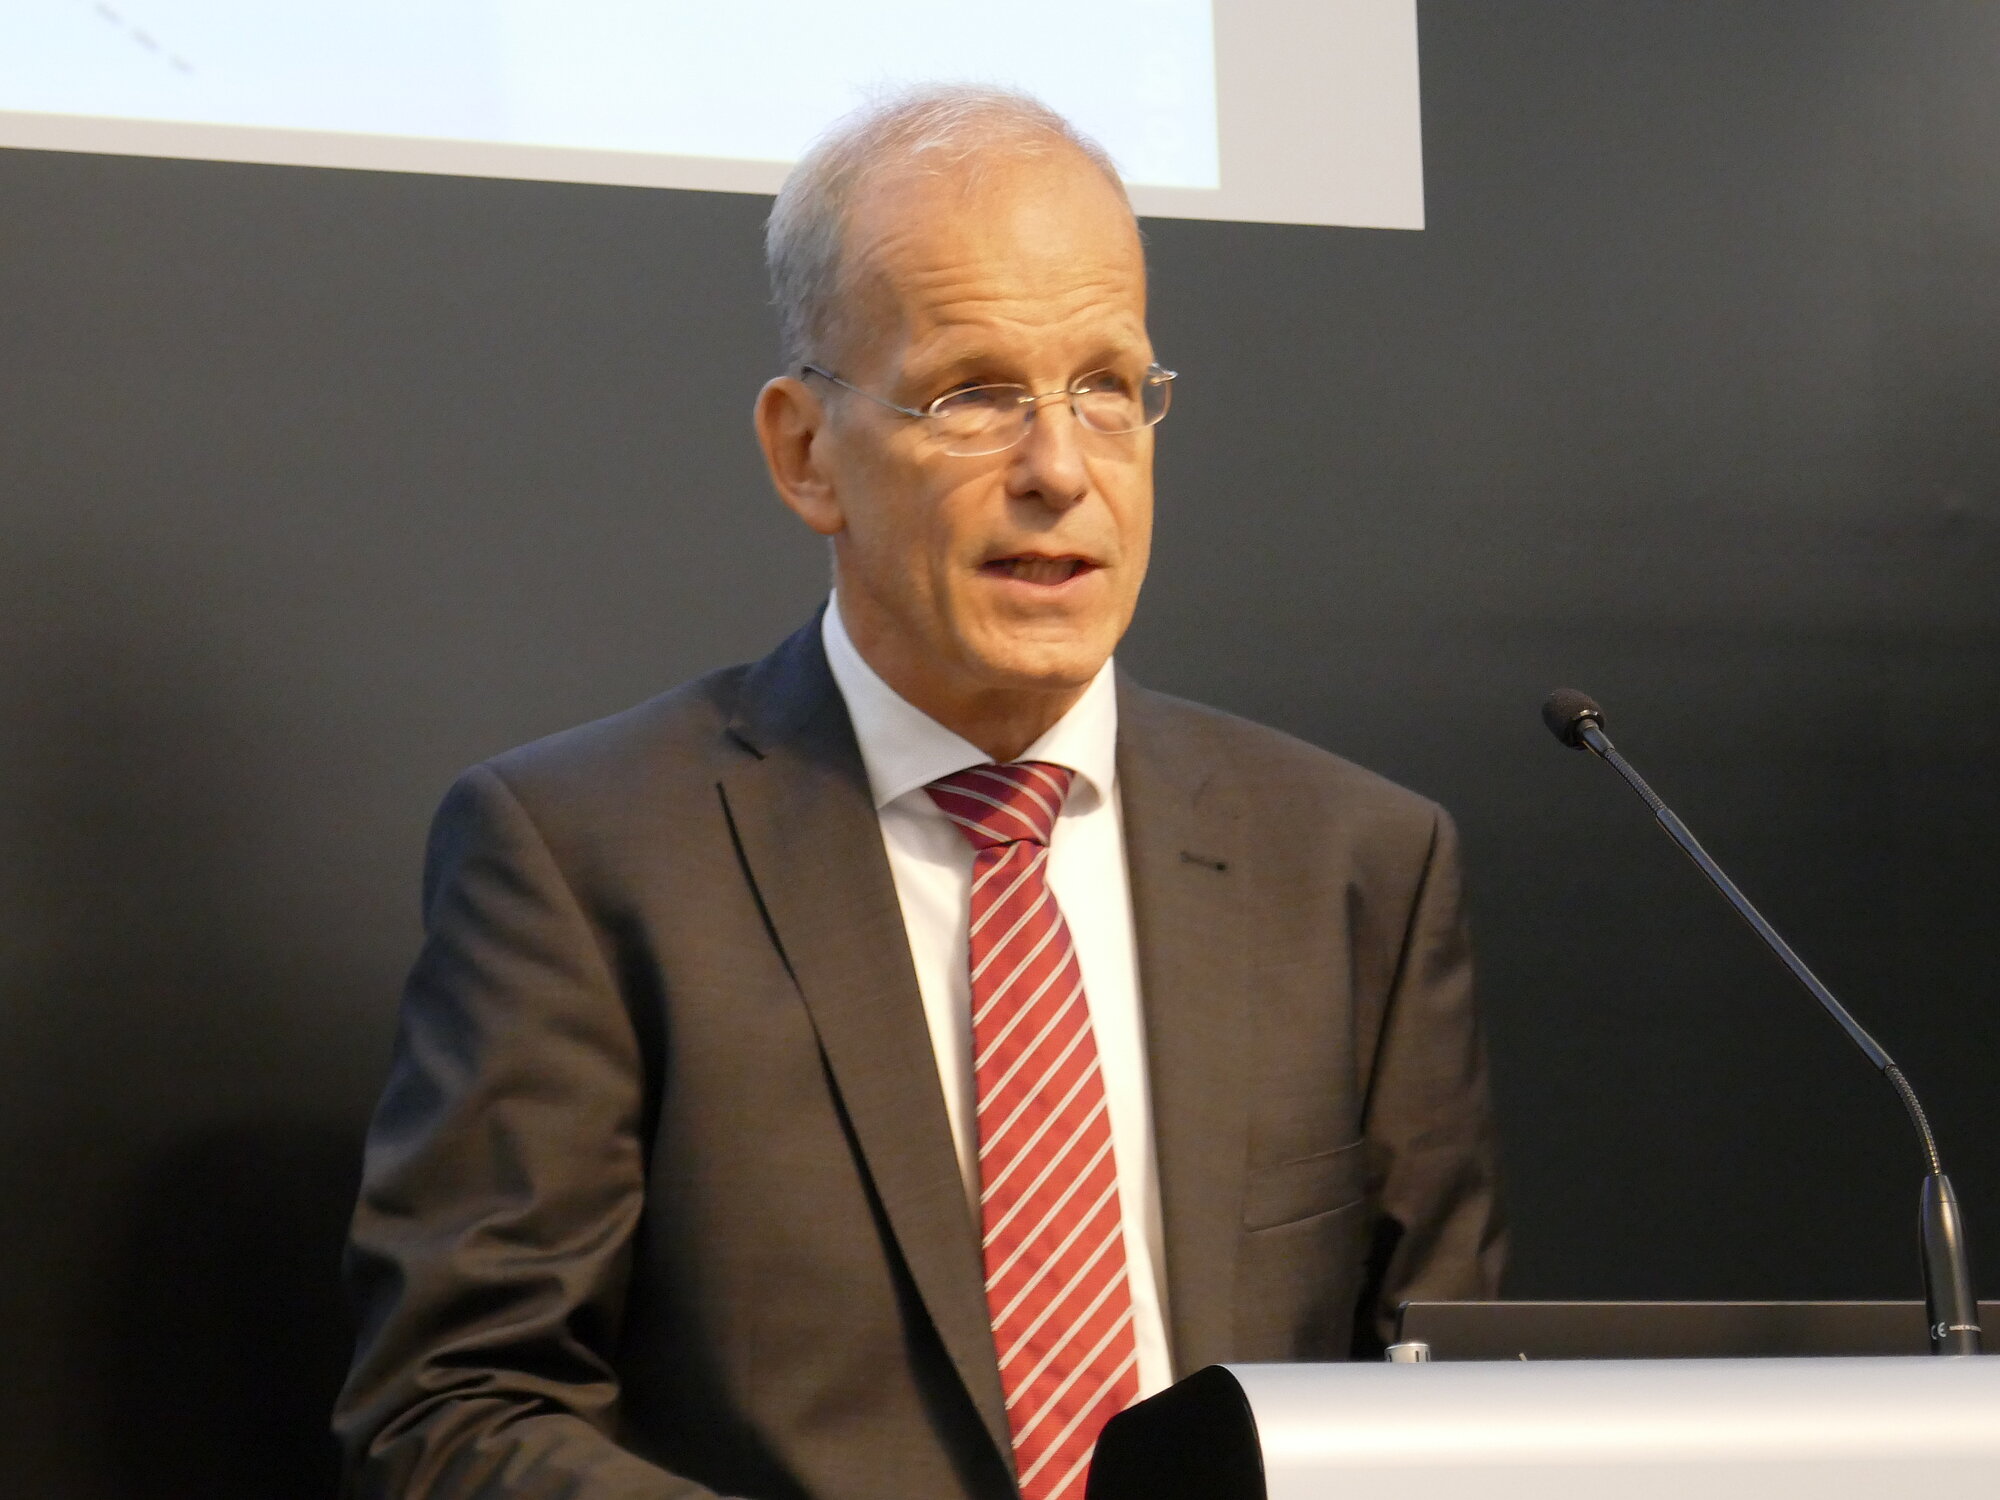 Prof. Dr. jur. Christian Katzenmeier